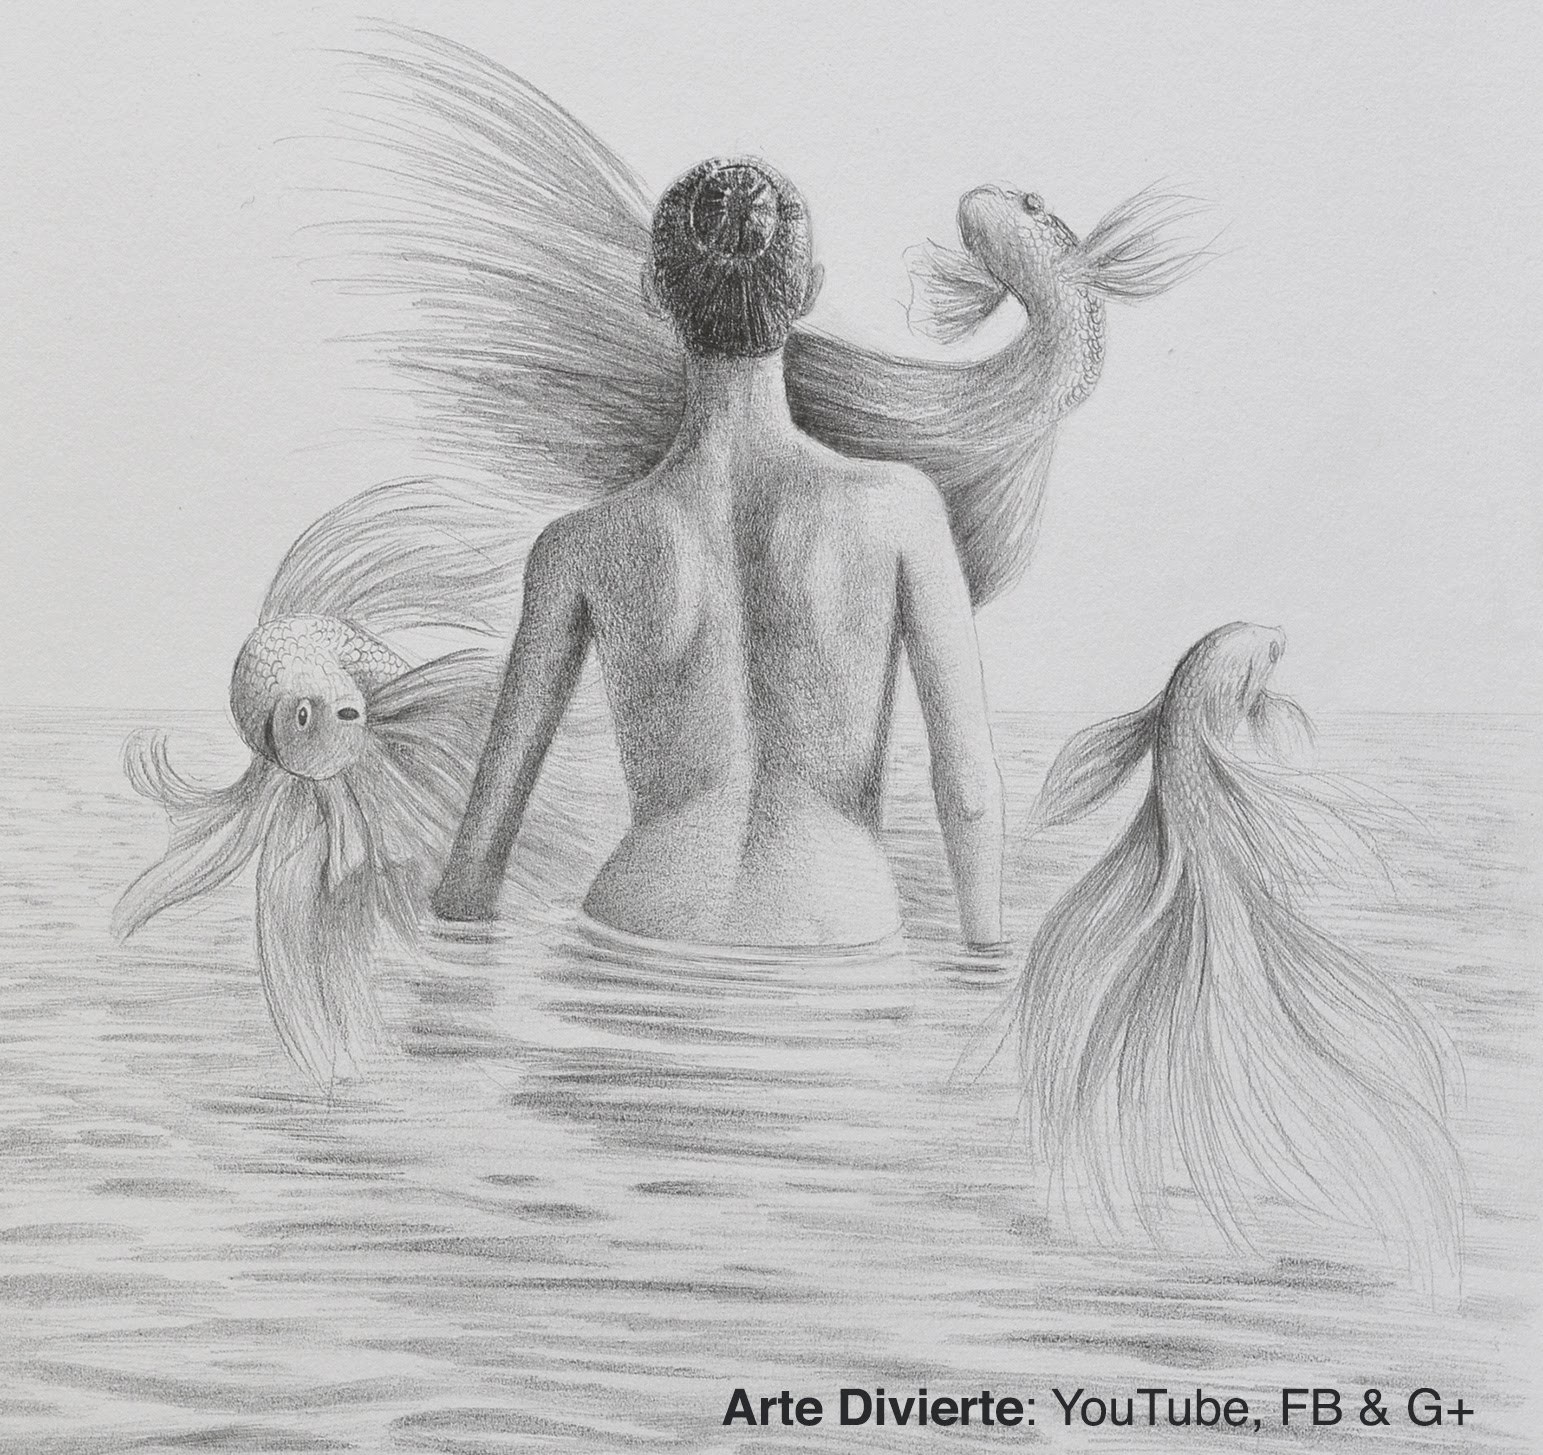 Cómo hacer un dibujo surrealista - Mujer en el agua de espalda con peces volando